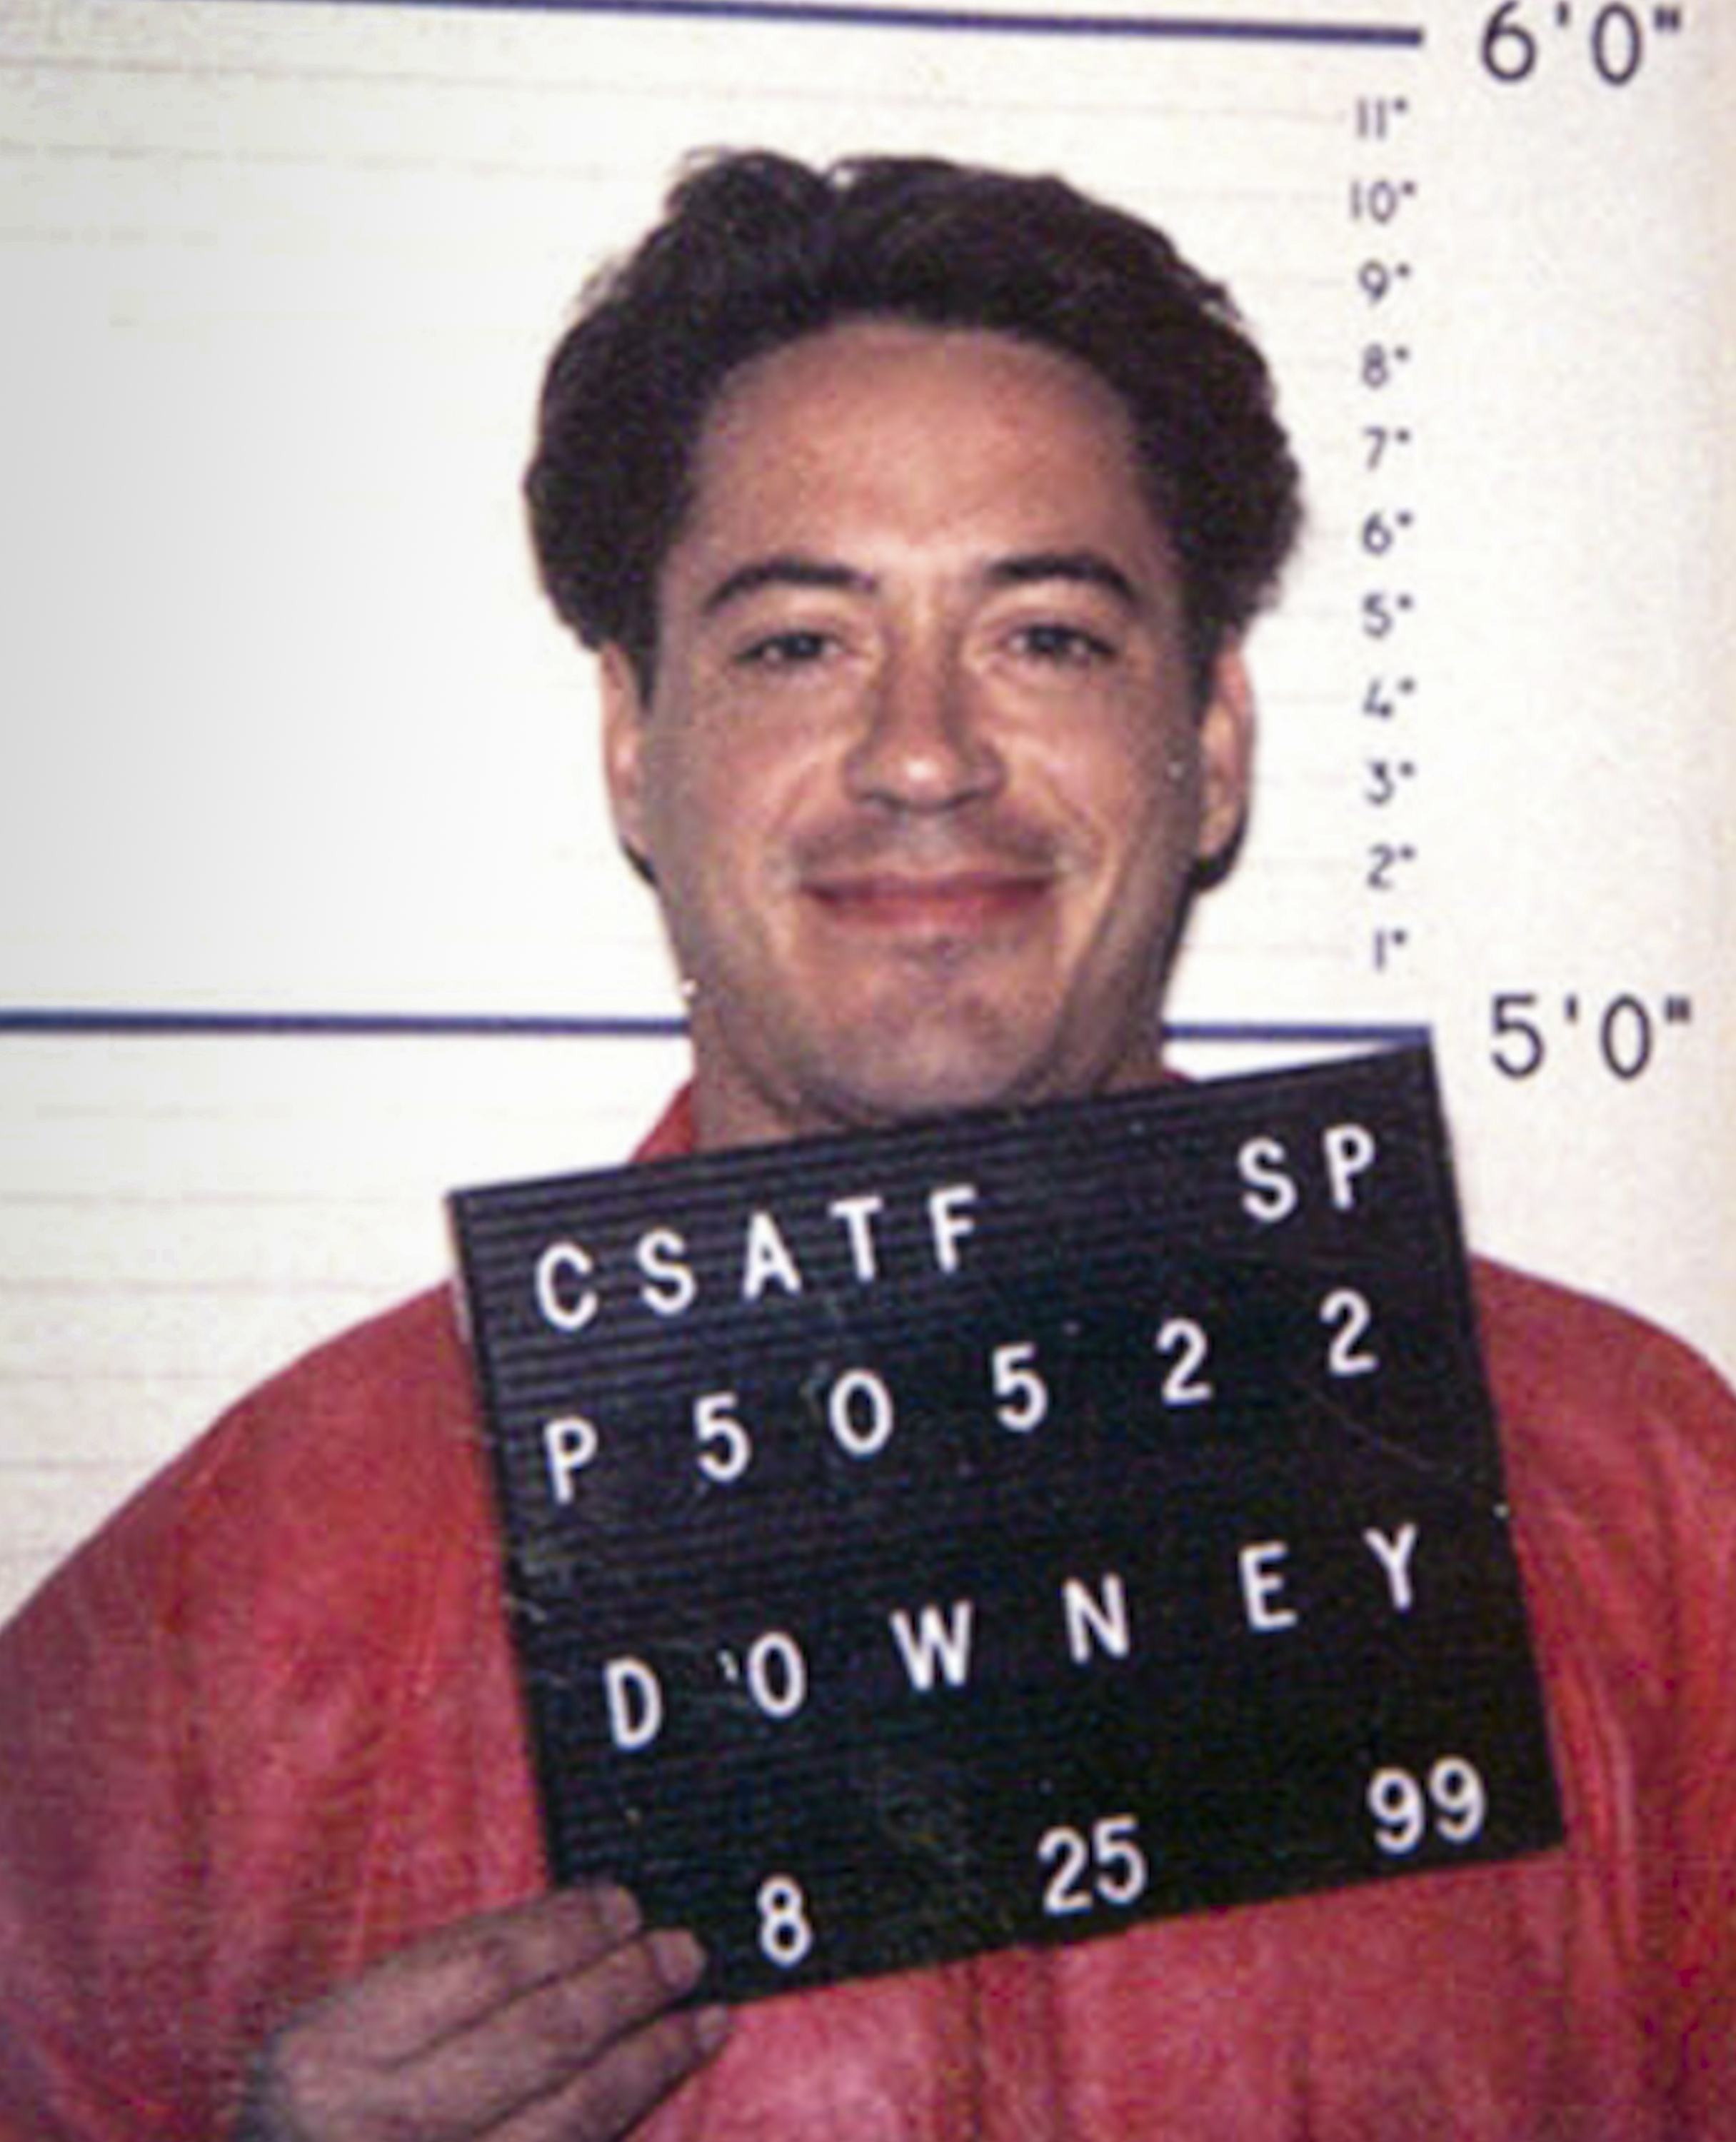 Robert Downey Jr. en California, el 25 de septiembre de 1999. | Foto: Getty Images